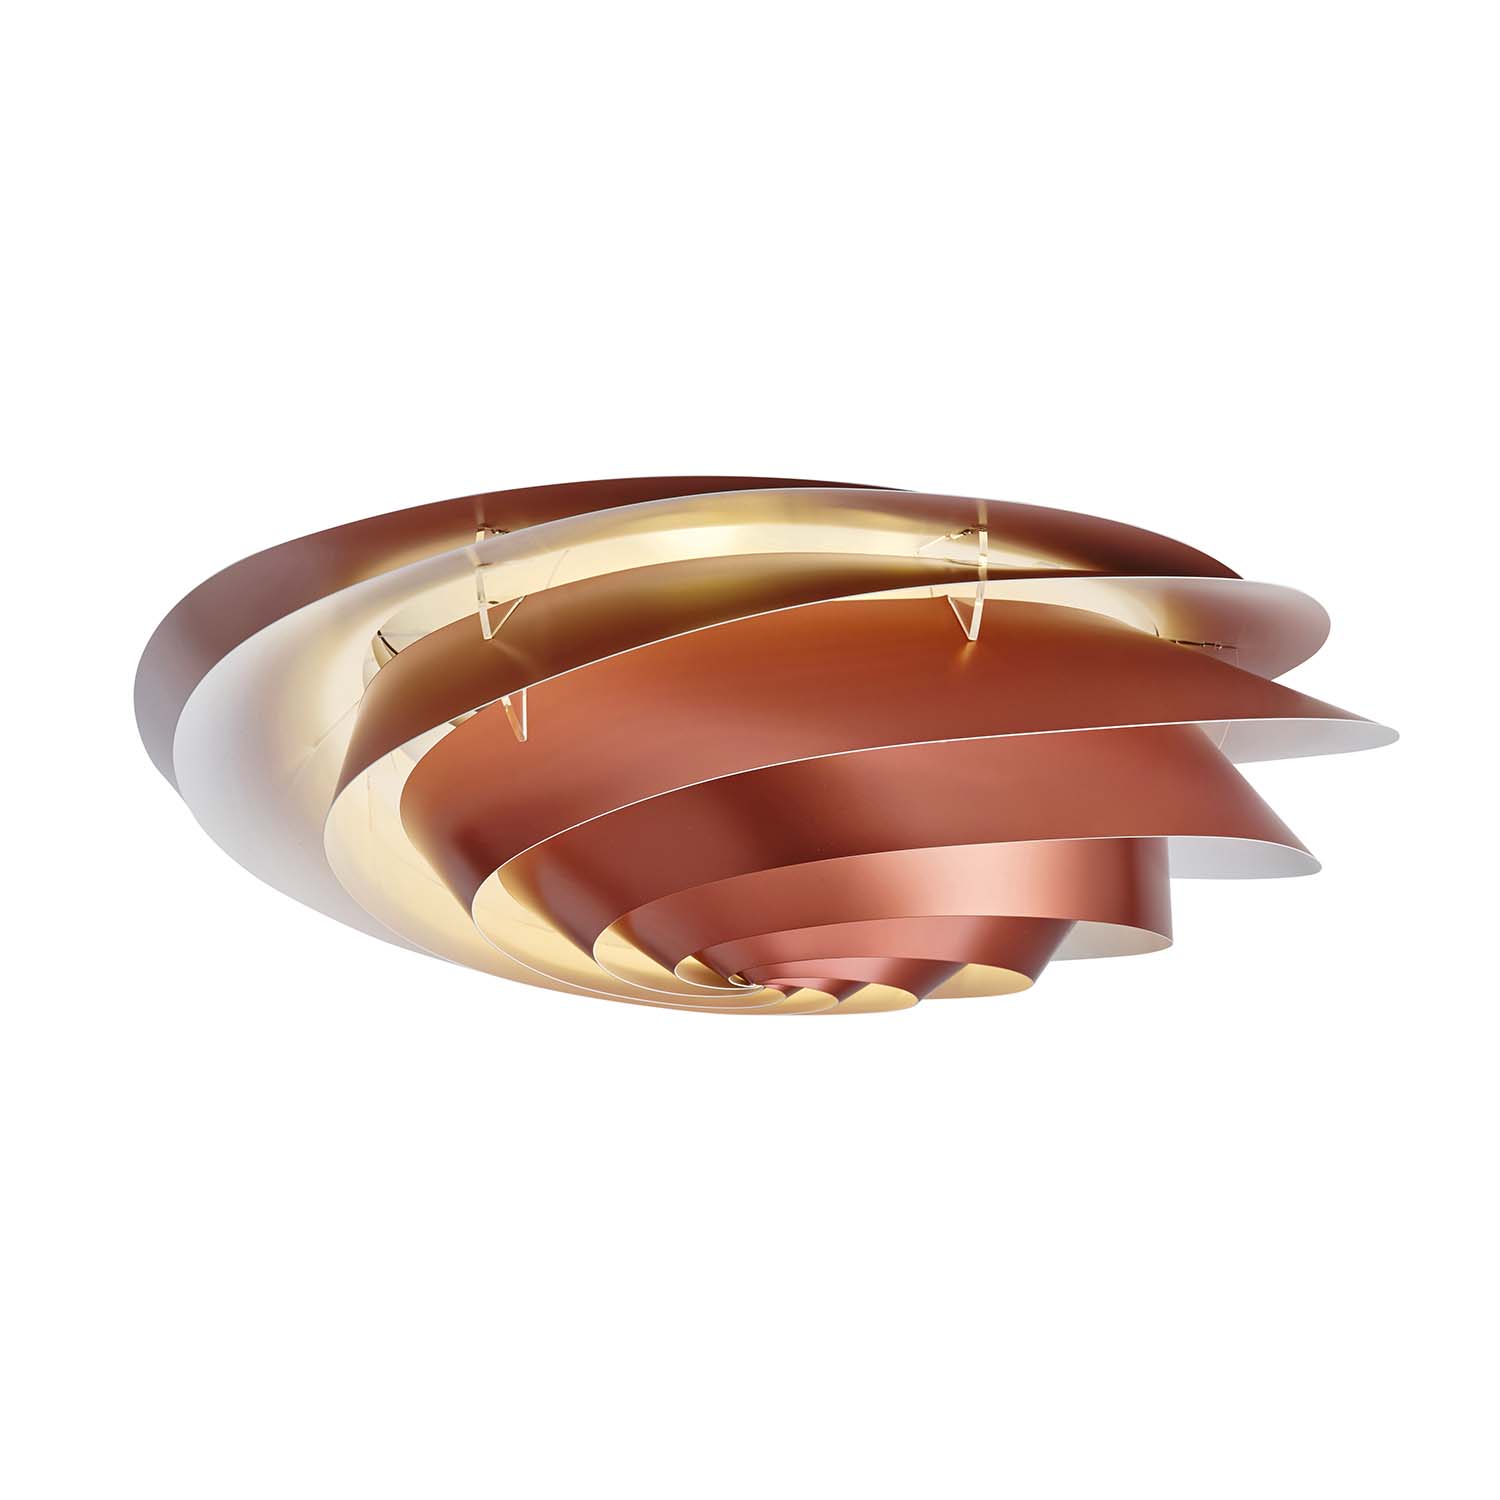 SWIRL Ceiling - Plafonnier spirale blanc ou cuivre, création designer